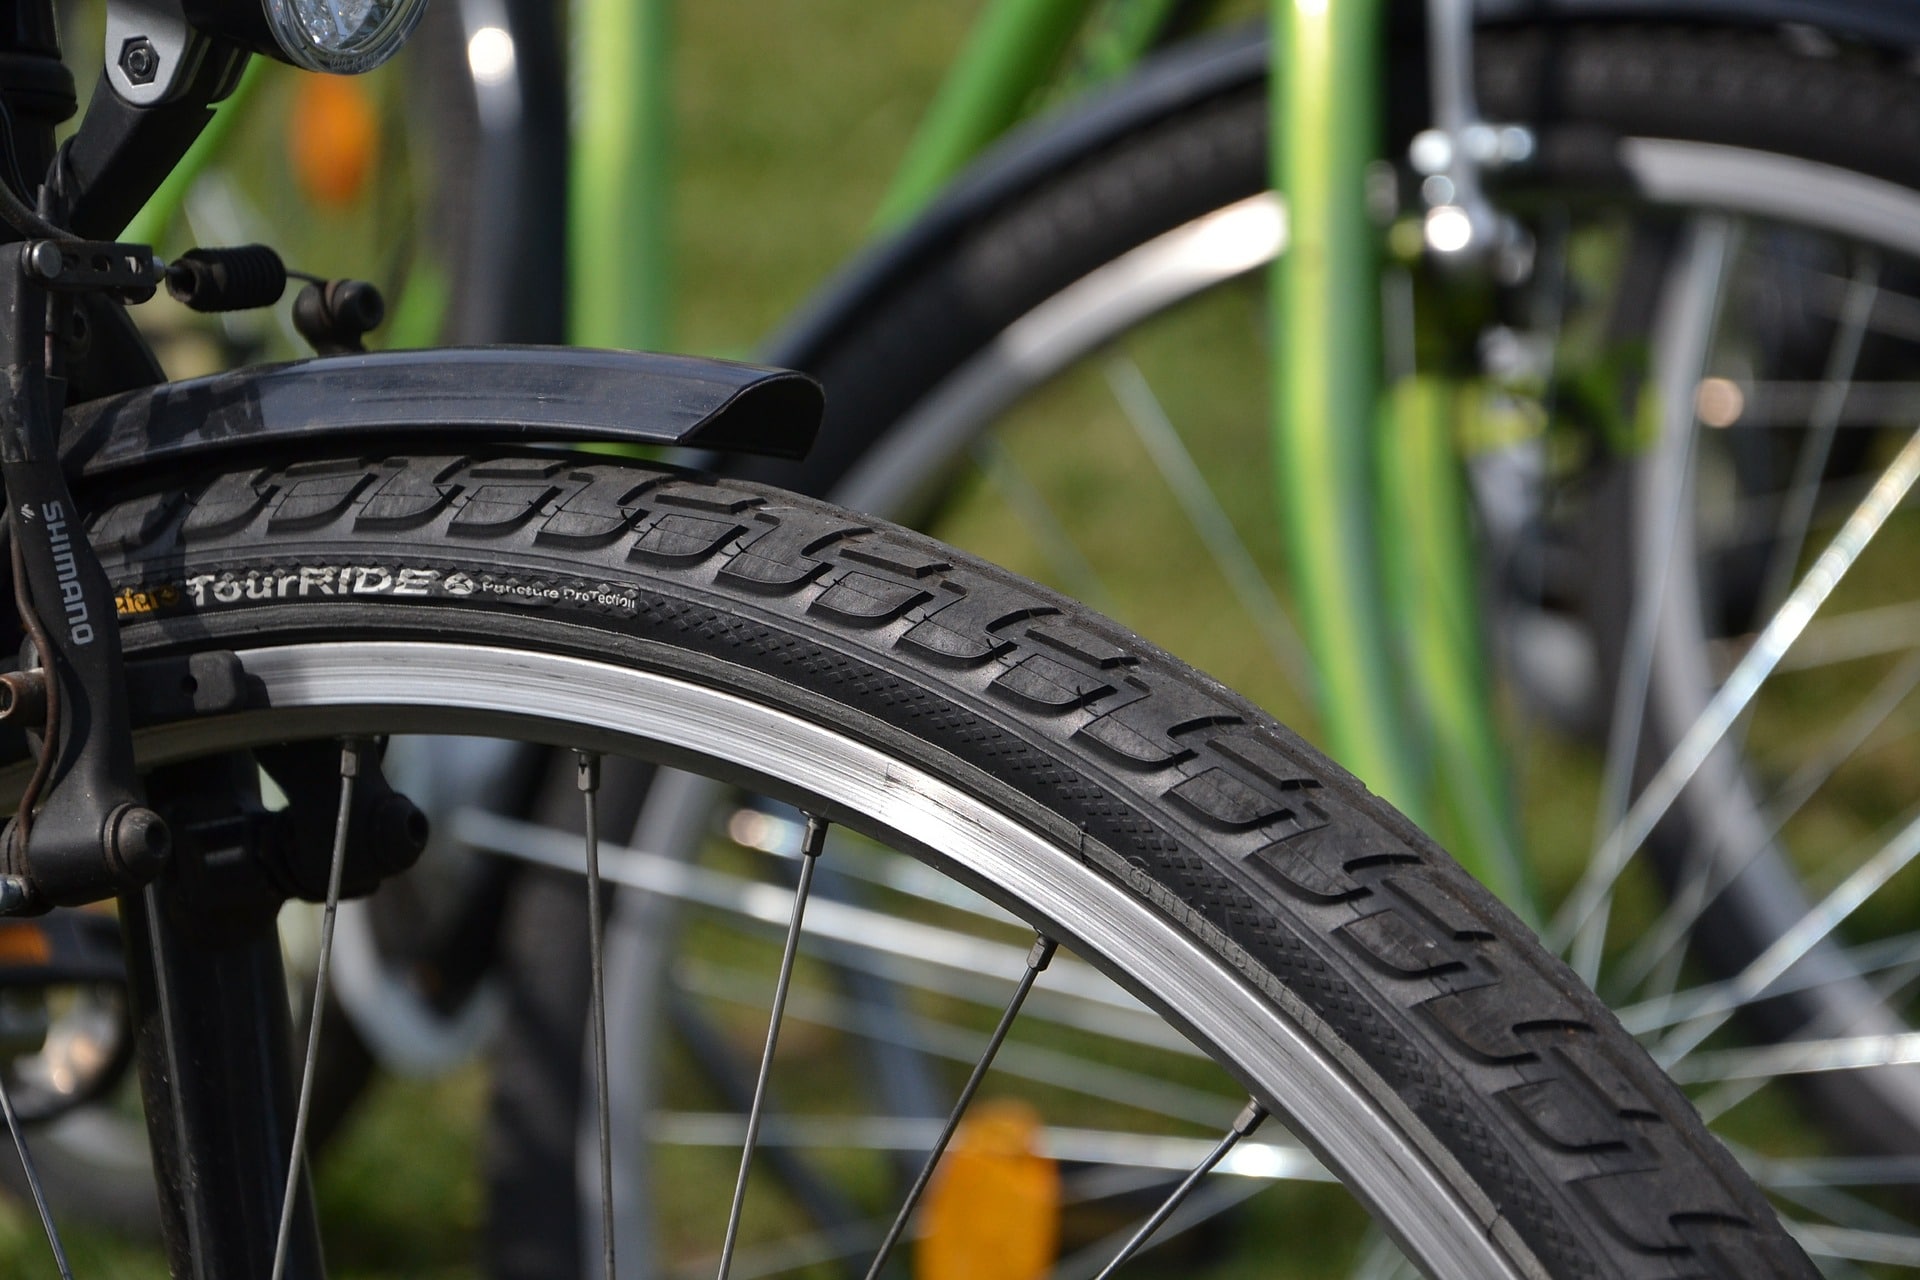 28 Zoll Michelin Fahrrad Reifen 42-622 Pannenschutz Mantel Decke Tire Reflexstreifen